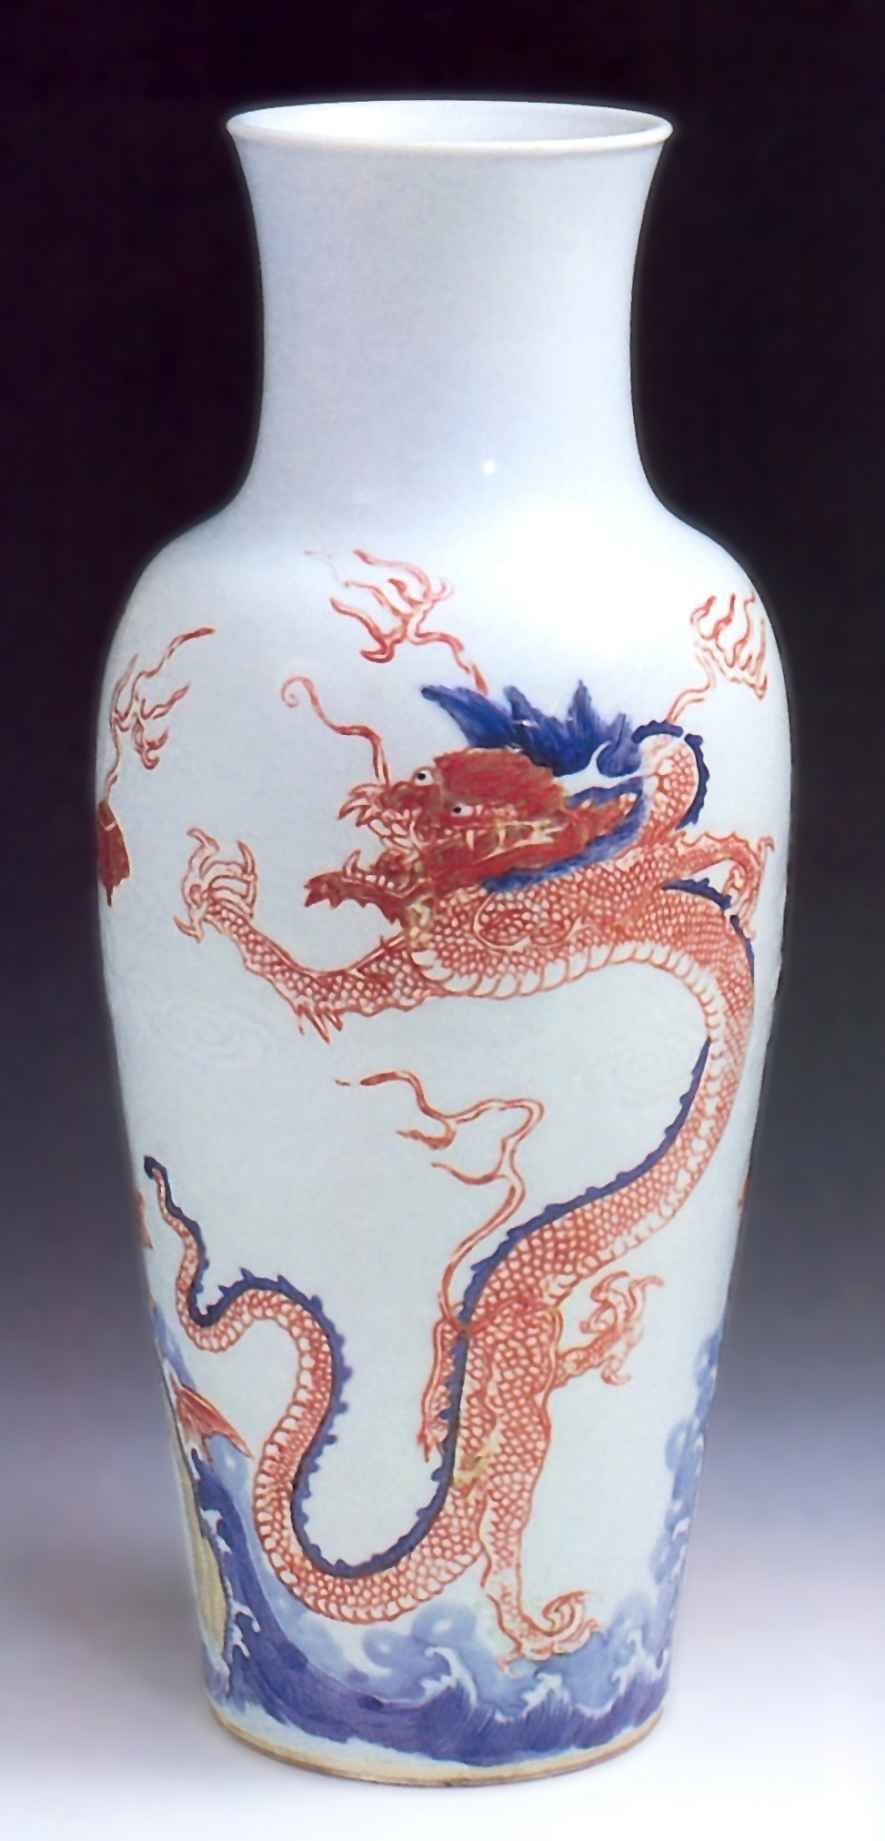 Ваза изображением двух драконов и морской пучины <br>Вторая половина 17 - первая четверть 18 века <br>Фарфор, глазурь <br>Шанхай, Городской музей 